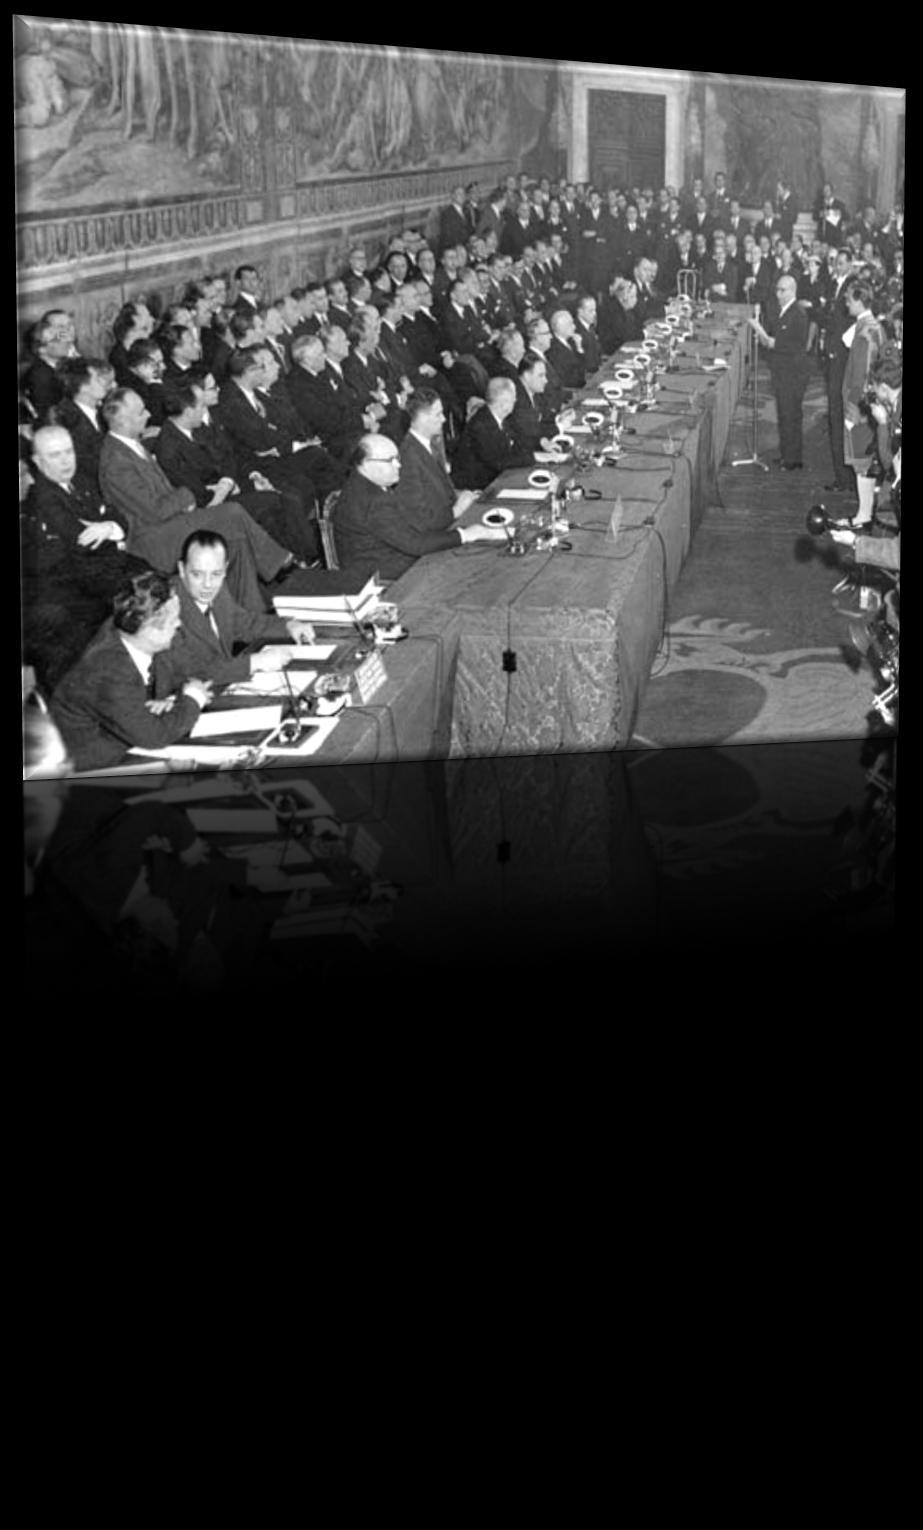 Ευρωπαϊκή Οικονομική Κοινότητα (ΕΟΚ) / European Economic Community (EEC) Ιδρύεται με τη Συνθήκη της Ρώμης στις 25 Μαρτίου 1957.